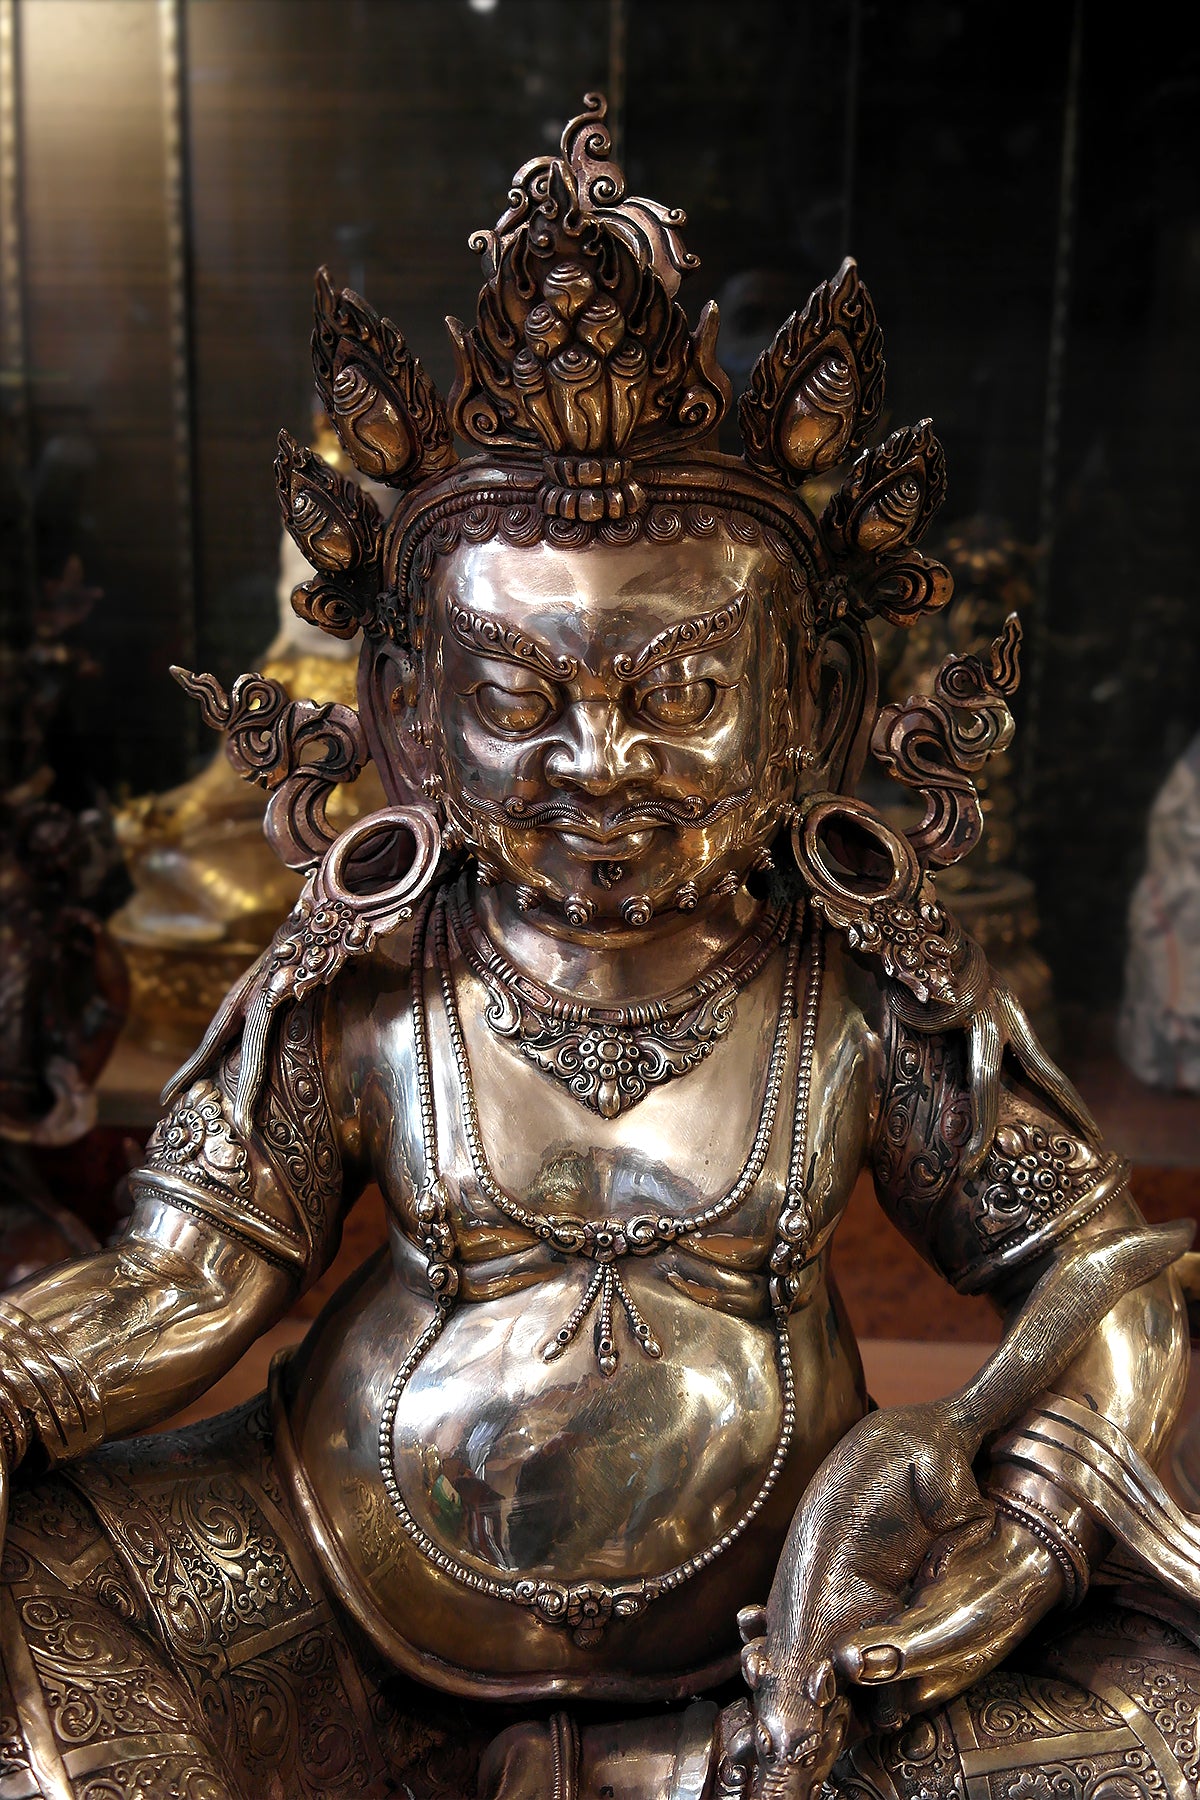 Masterpiece Gold toned Zambala Statue from Nepal, Kubera statue 28"